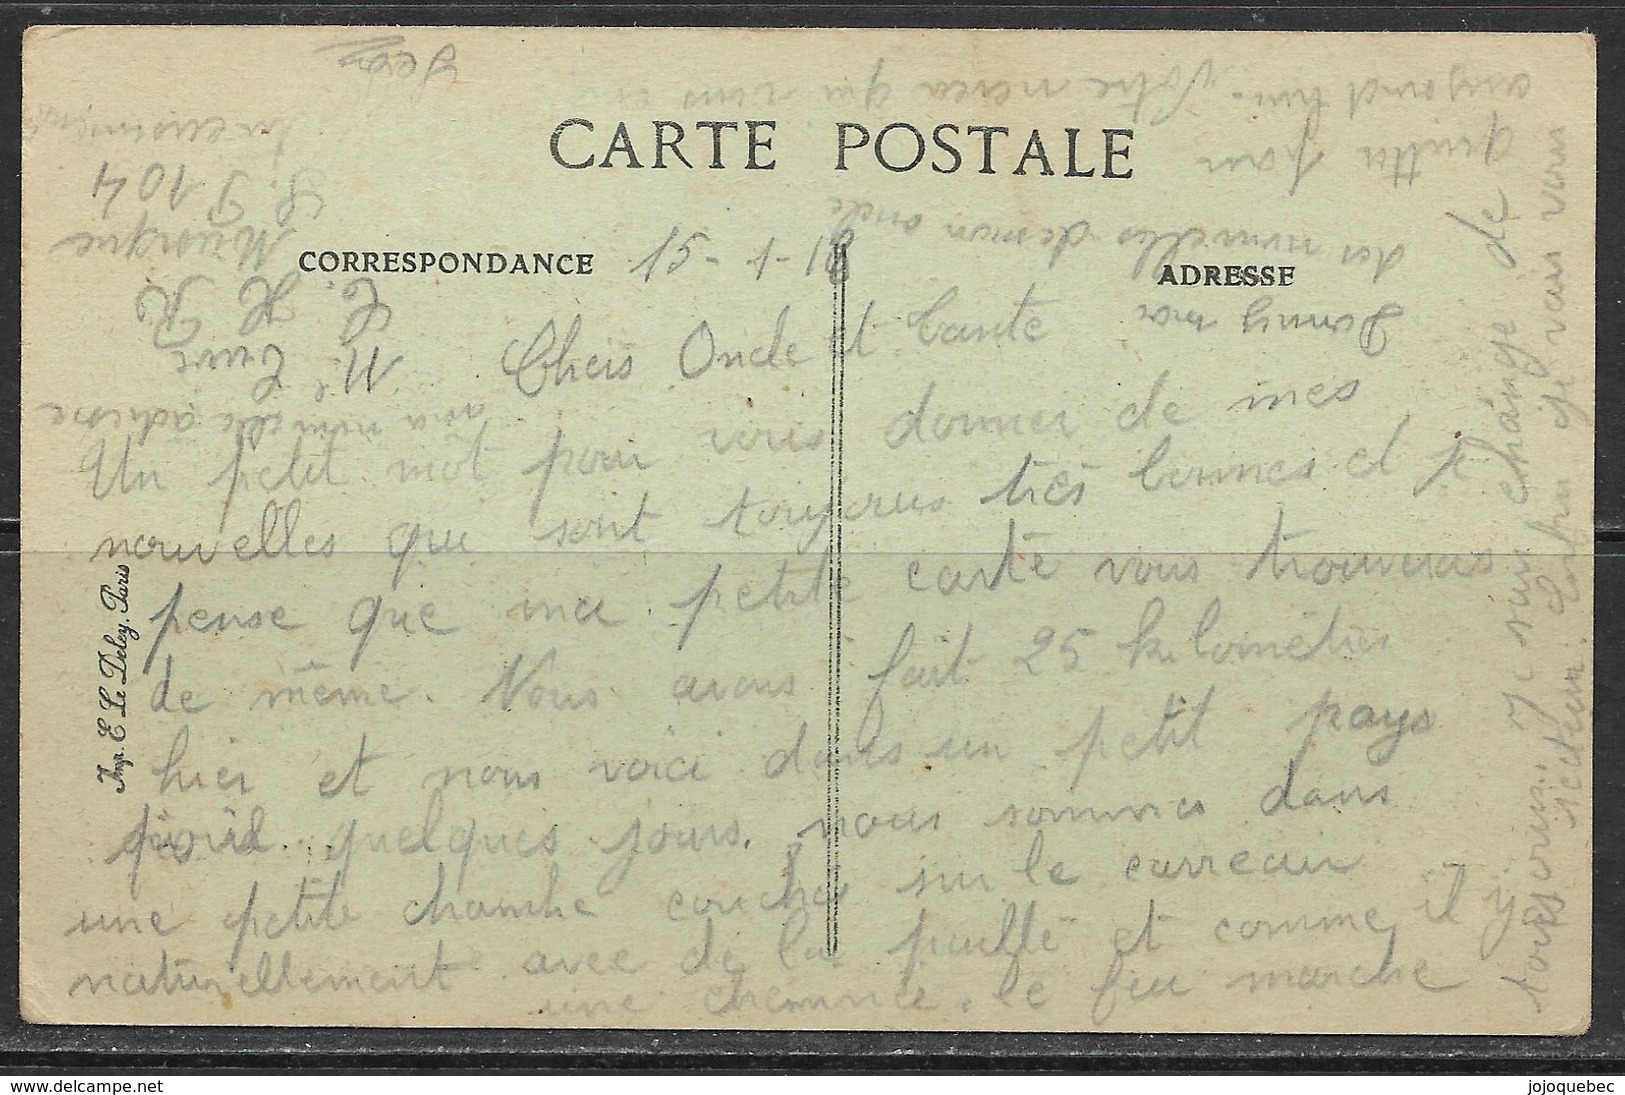 Cartes Postale Ancienne Retraite Des Allemands, Guerre 1914 - 15 - 16 - 17... Tergnier ( Aisne ) GERMAN RETREAT - Arnières